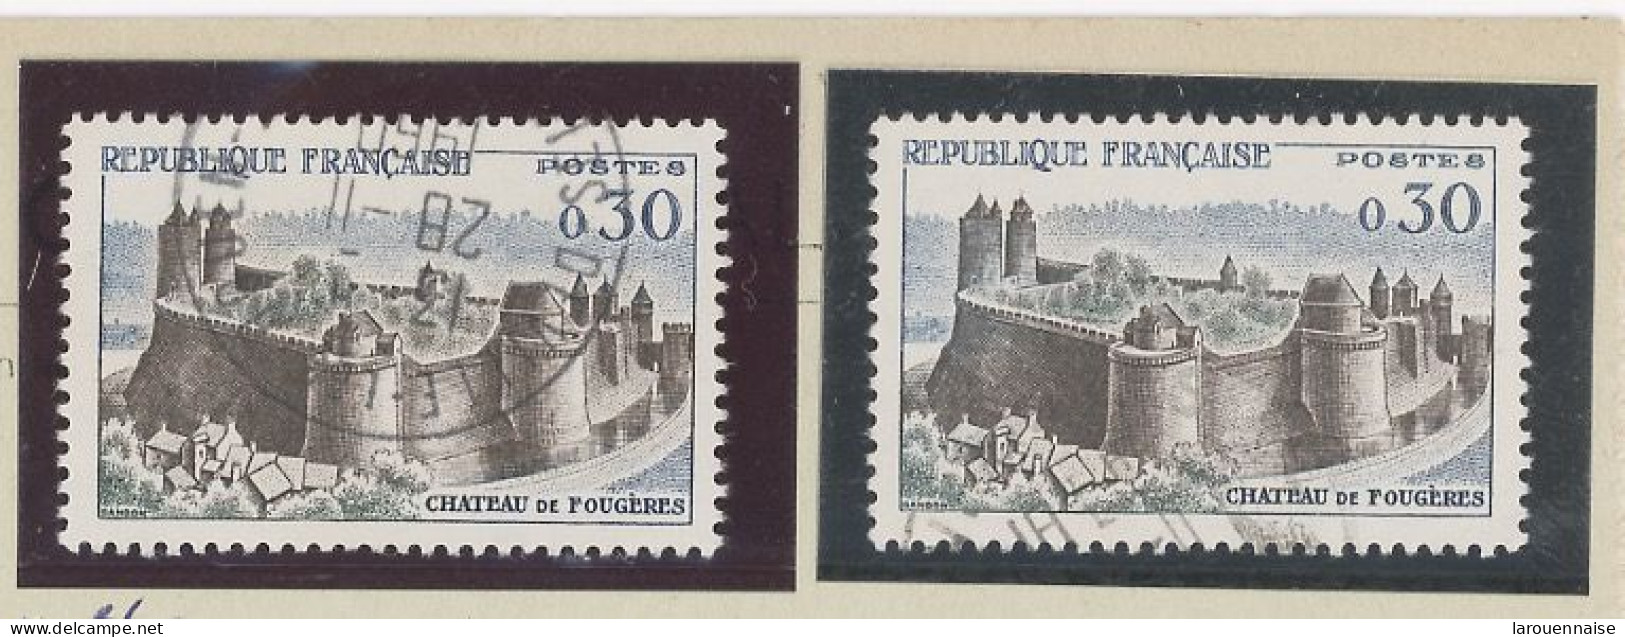 VARIÉTÉ - N° 1236 Obl - ARBRES GRIS À L'INTERIEUR DES REMPARTS ( Cérès N°1236b) - Used Stamps